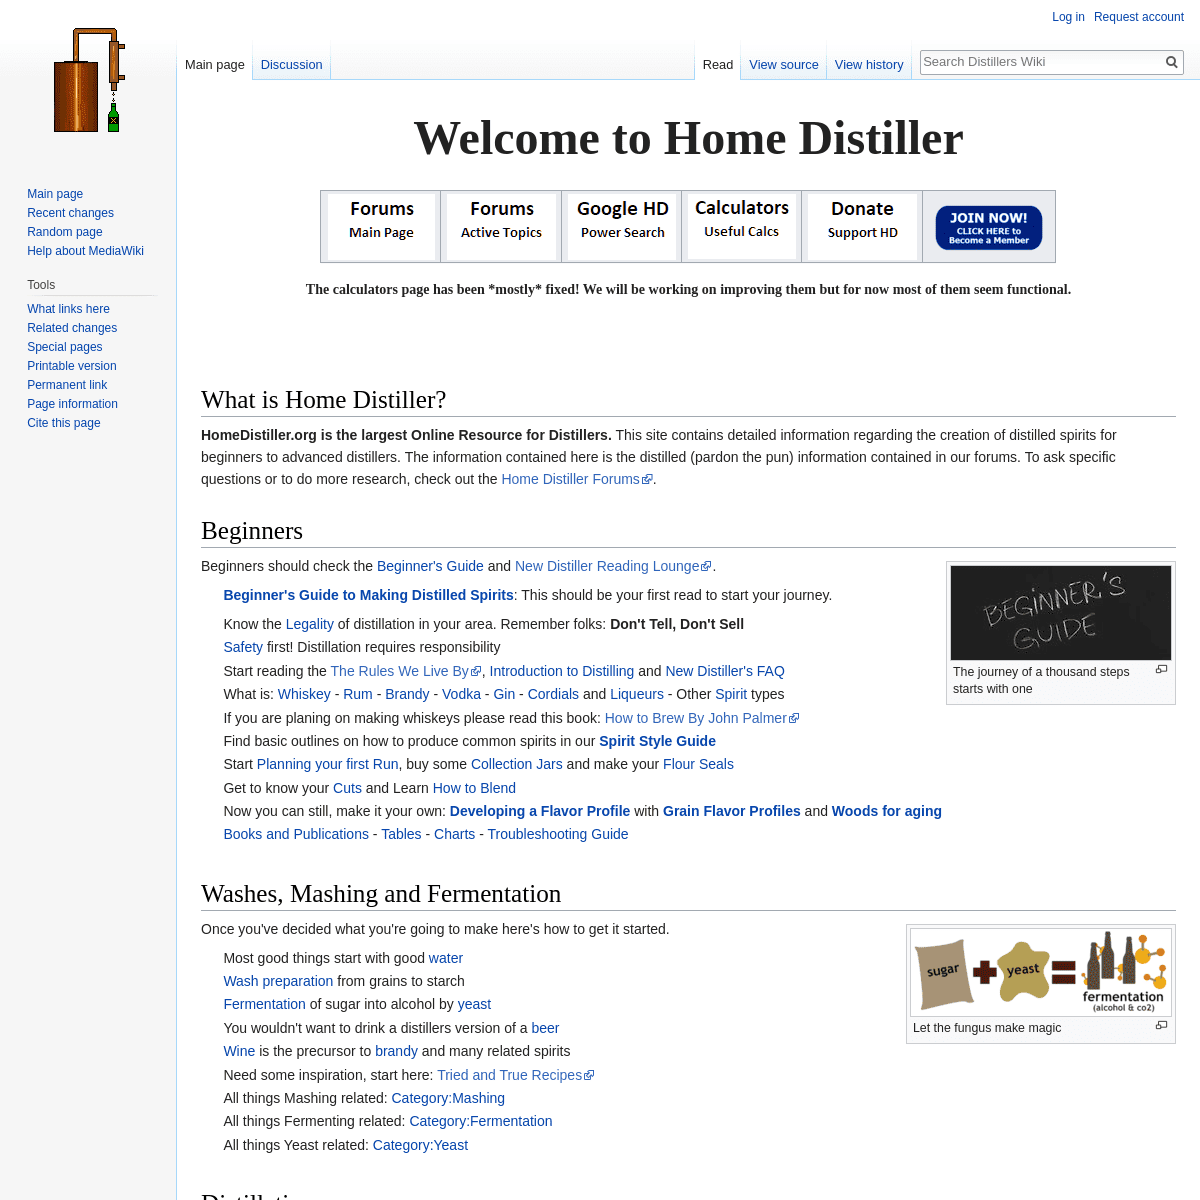 A complete backup of https://homedistiller.org